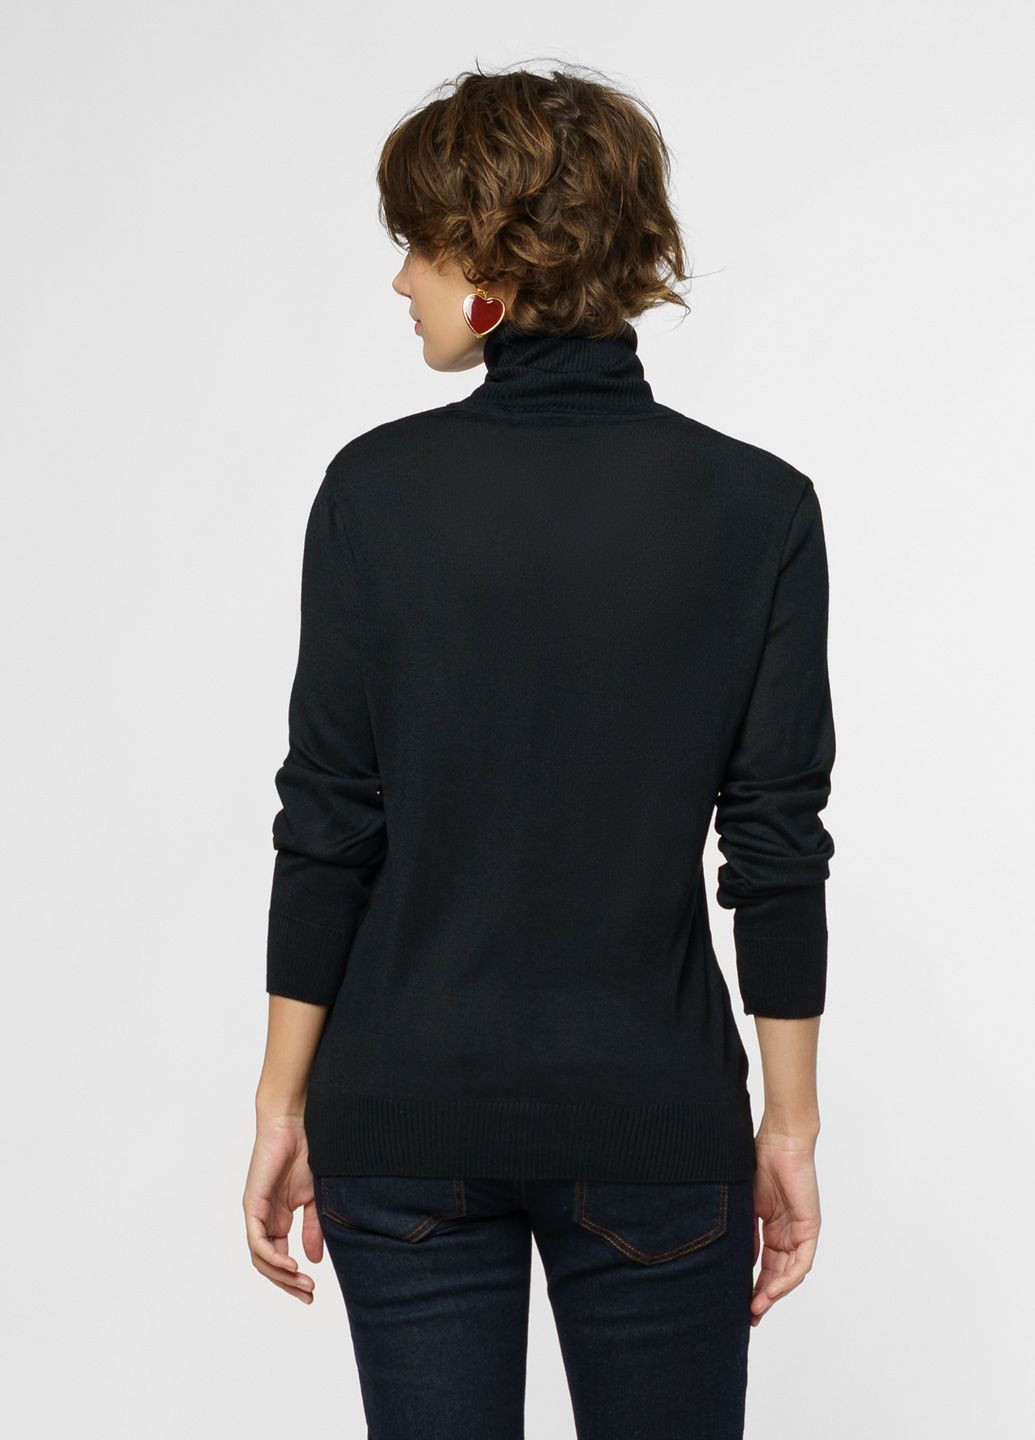 Черный зимний свитер женский черный Arber Roll-neck WD WTR-147